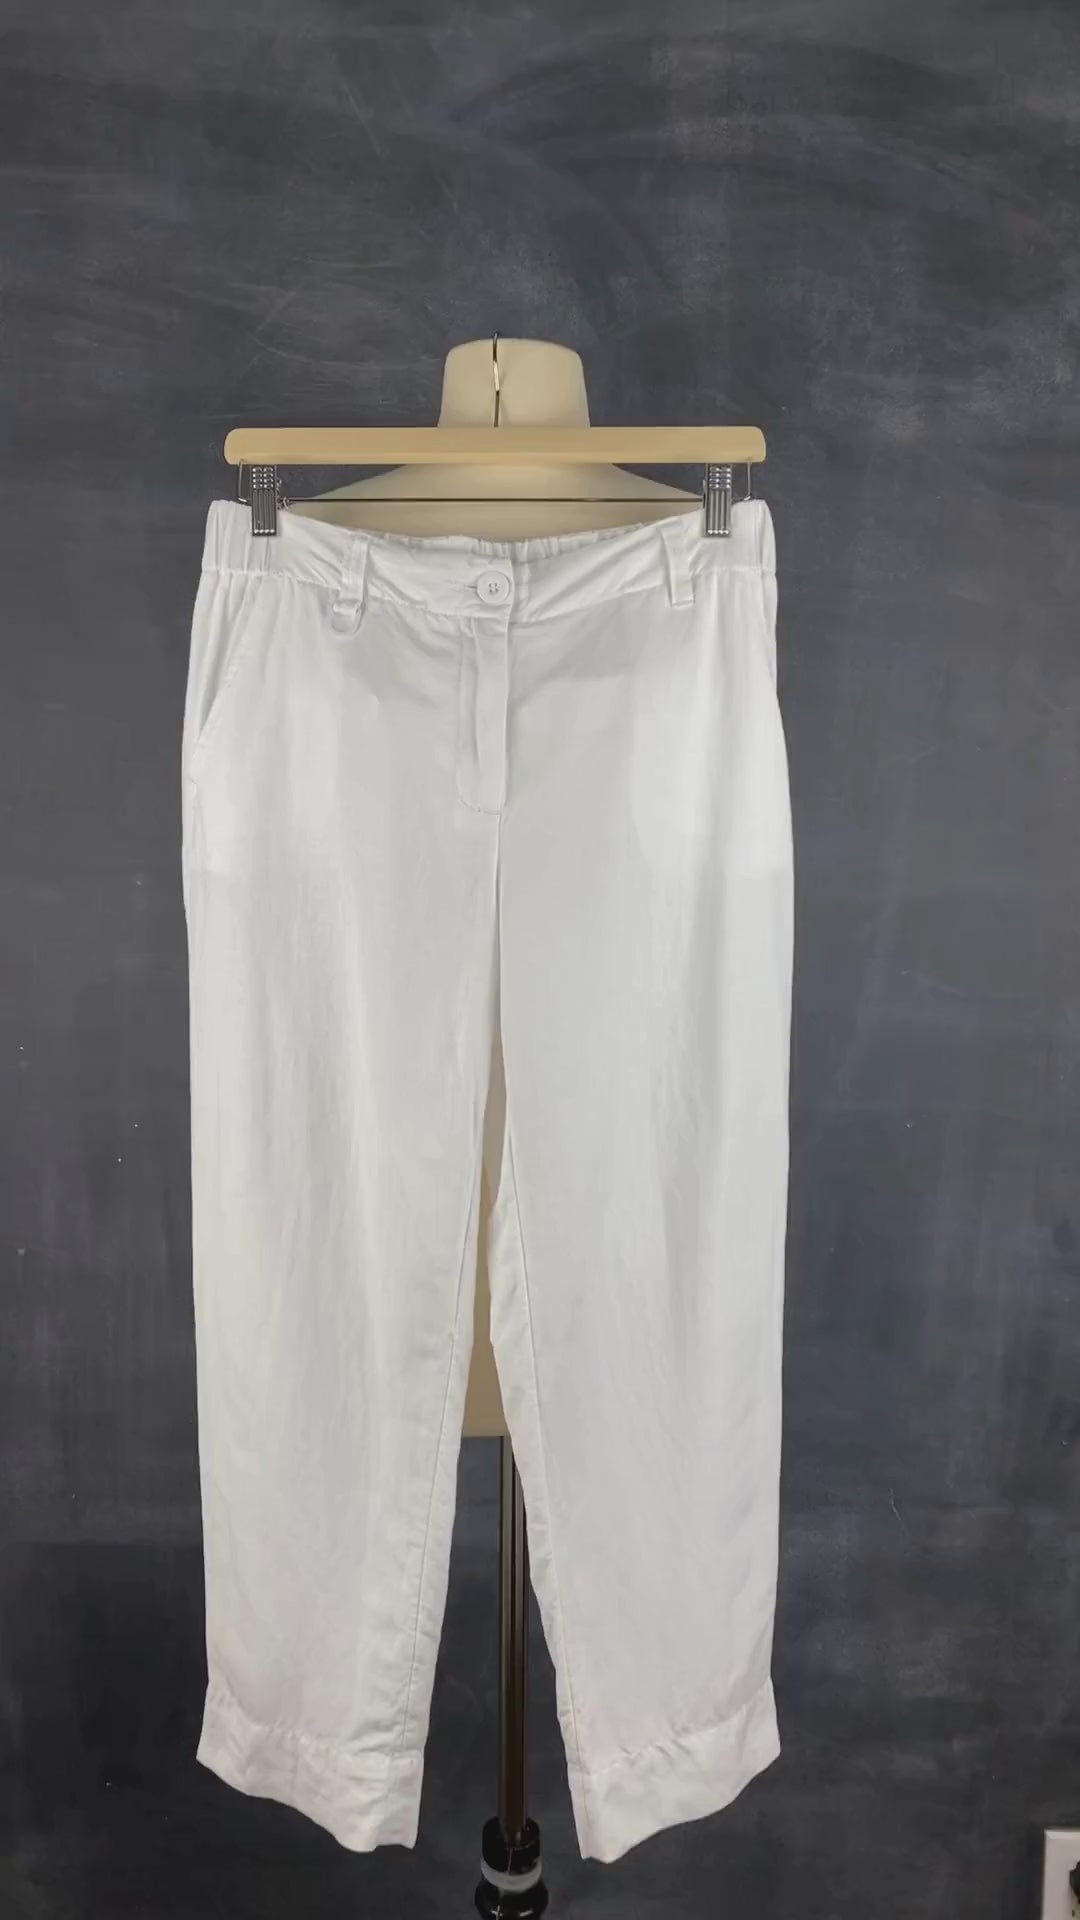 Pantalon blanc longueur 3/4 en mélange de lin Melanie Lyne, taille 4. Vue de la vidéo qui présente tous les détails du pantalon.